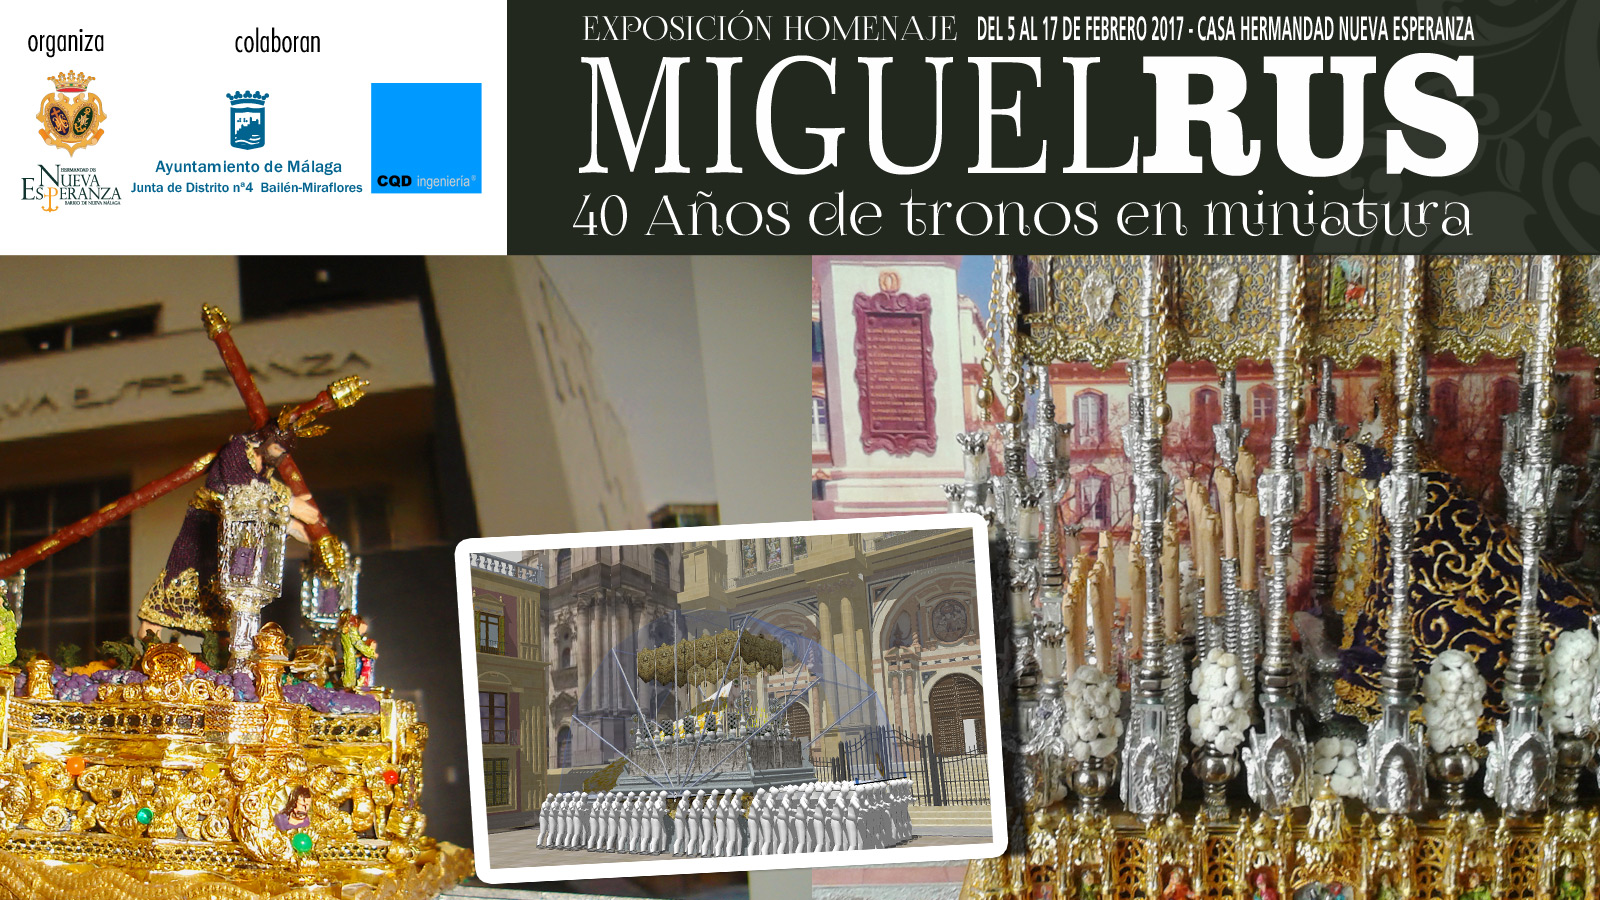 Nueva Esperanza organiza la exposición homenaje al artista Miguel Rus "40 Años de tronos en miniatura"